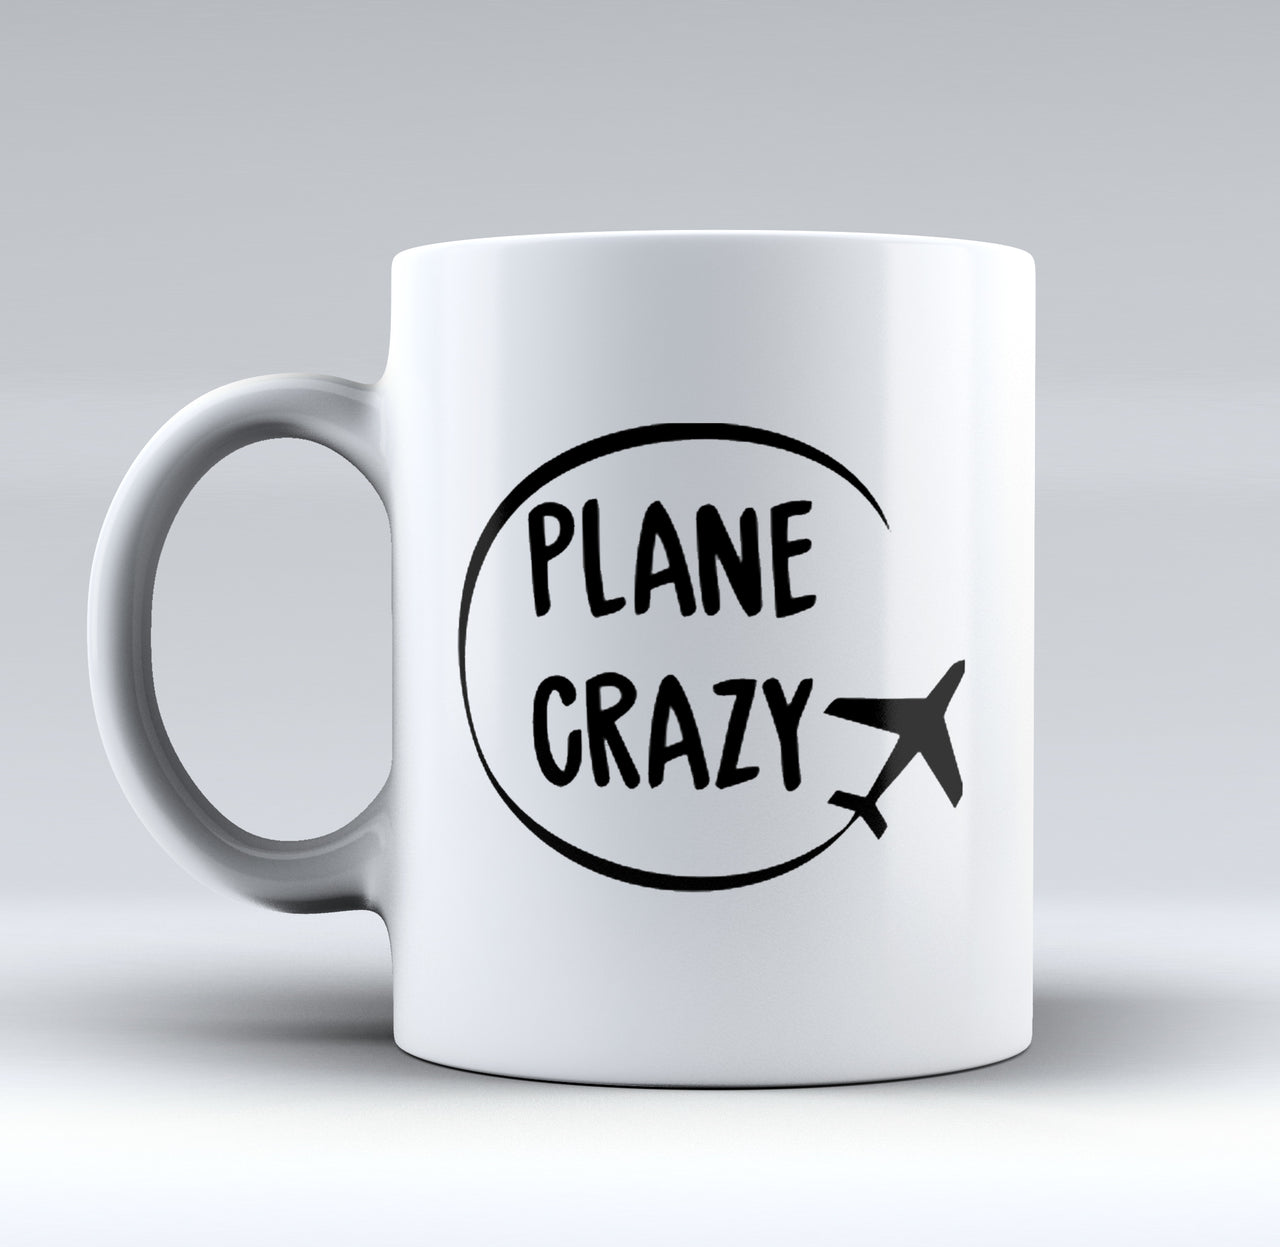 Plane Crazy Designed Mugs